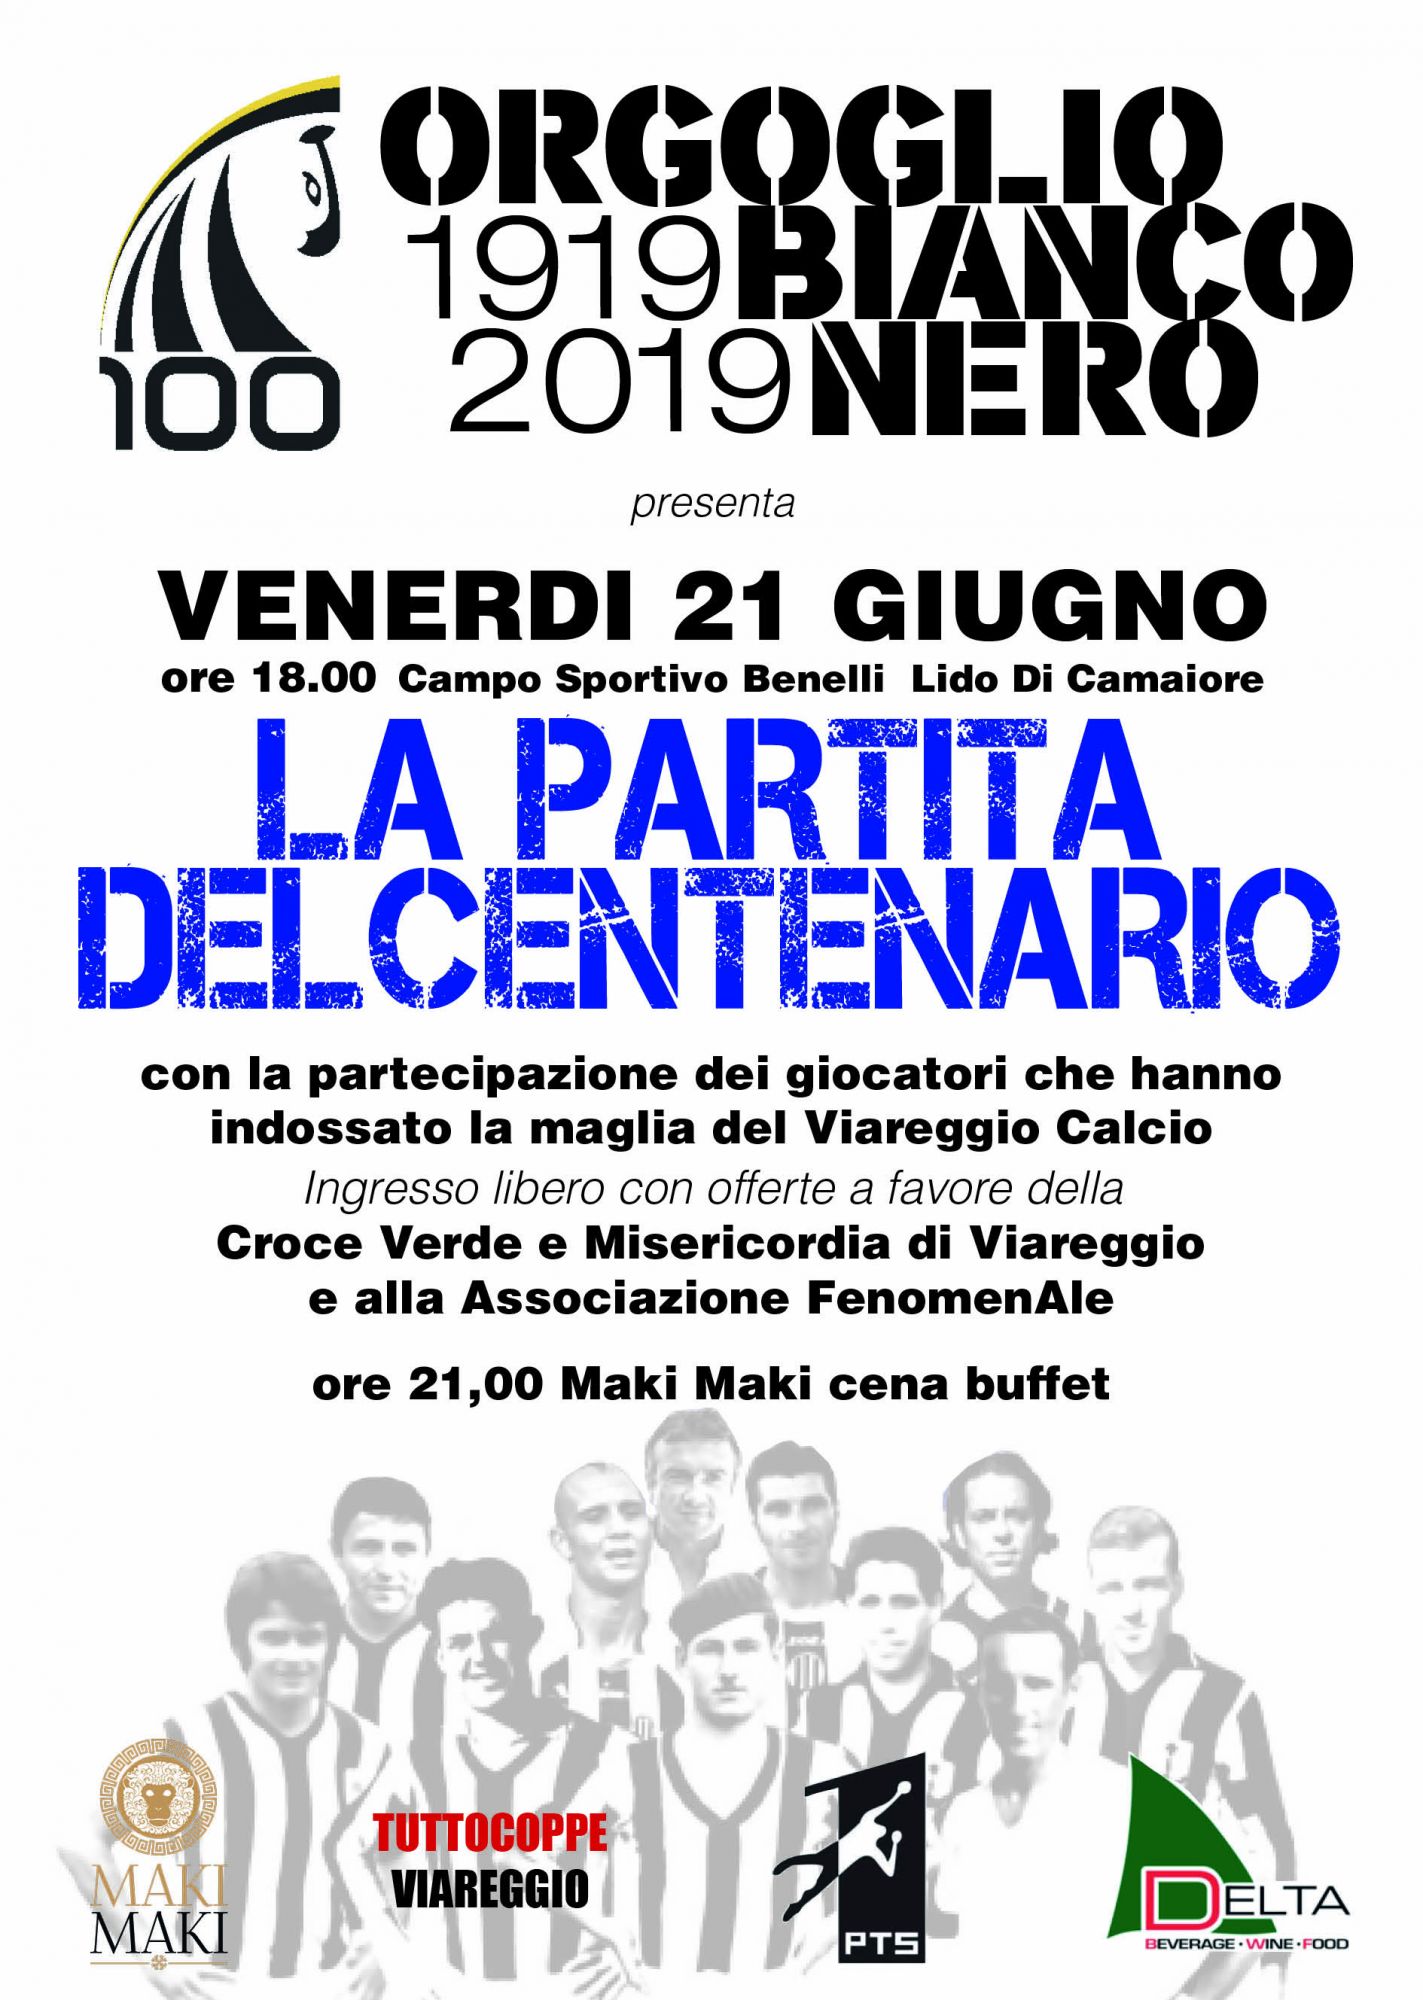 Orgoglio Bianconero, domani la partita del centenario